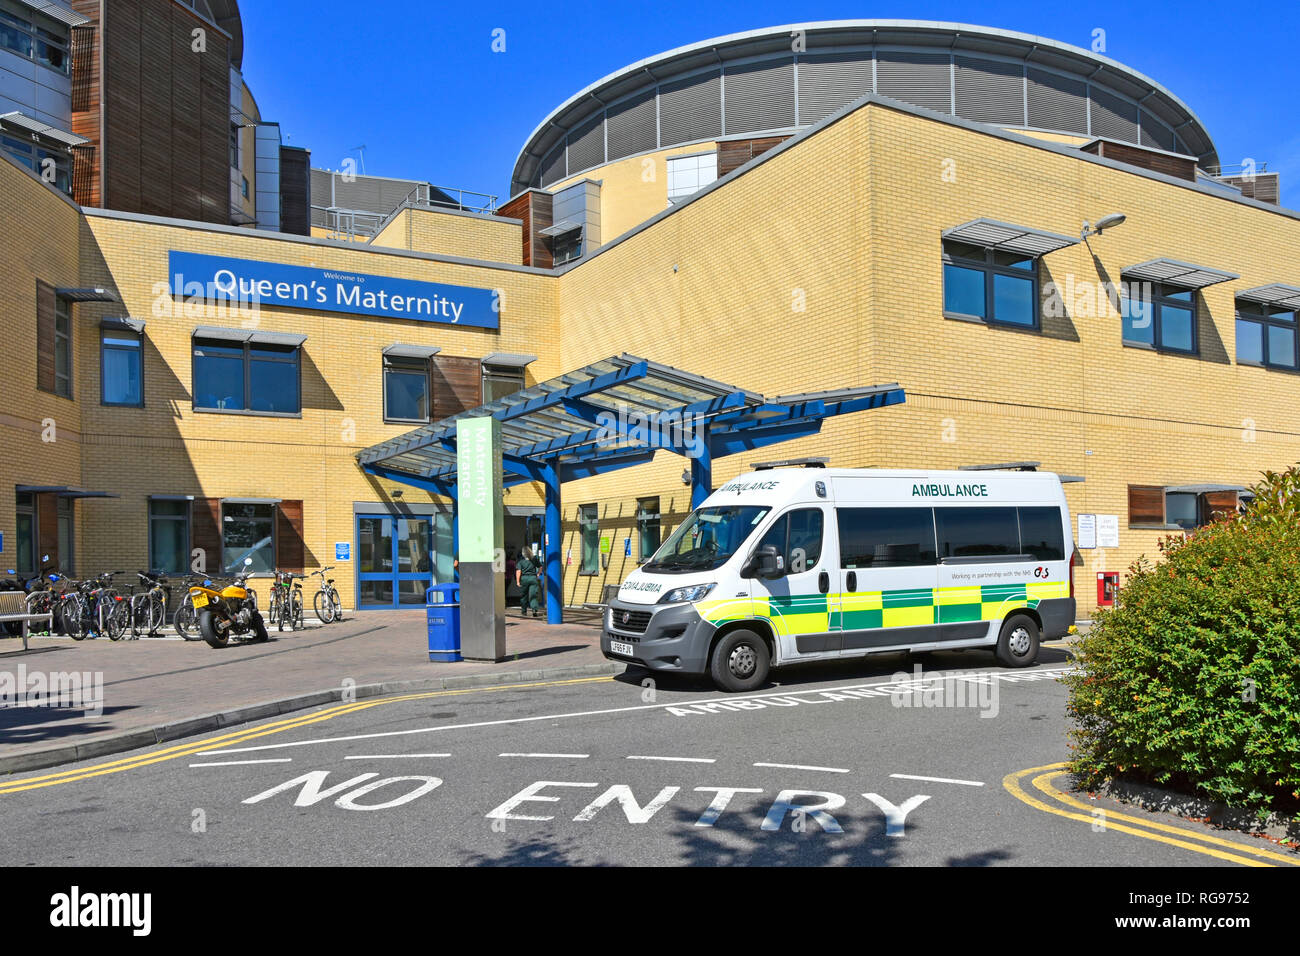 NHS Queens Hospital moderne pfi bâtiment entrée de service de soins de maternité avec véhicule de transport ambulance G4S Romford East London Angleterre Royaume-Uni Banque D'Images